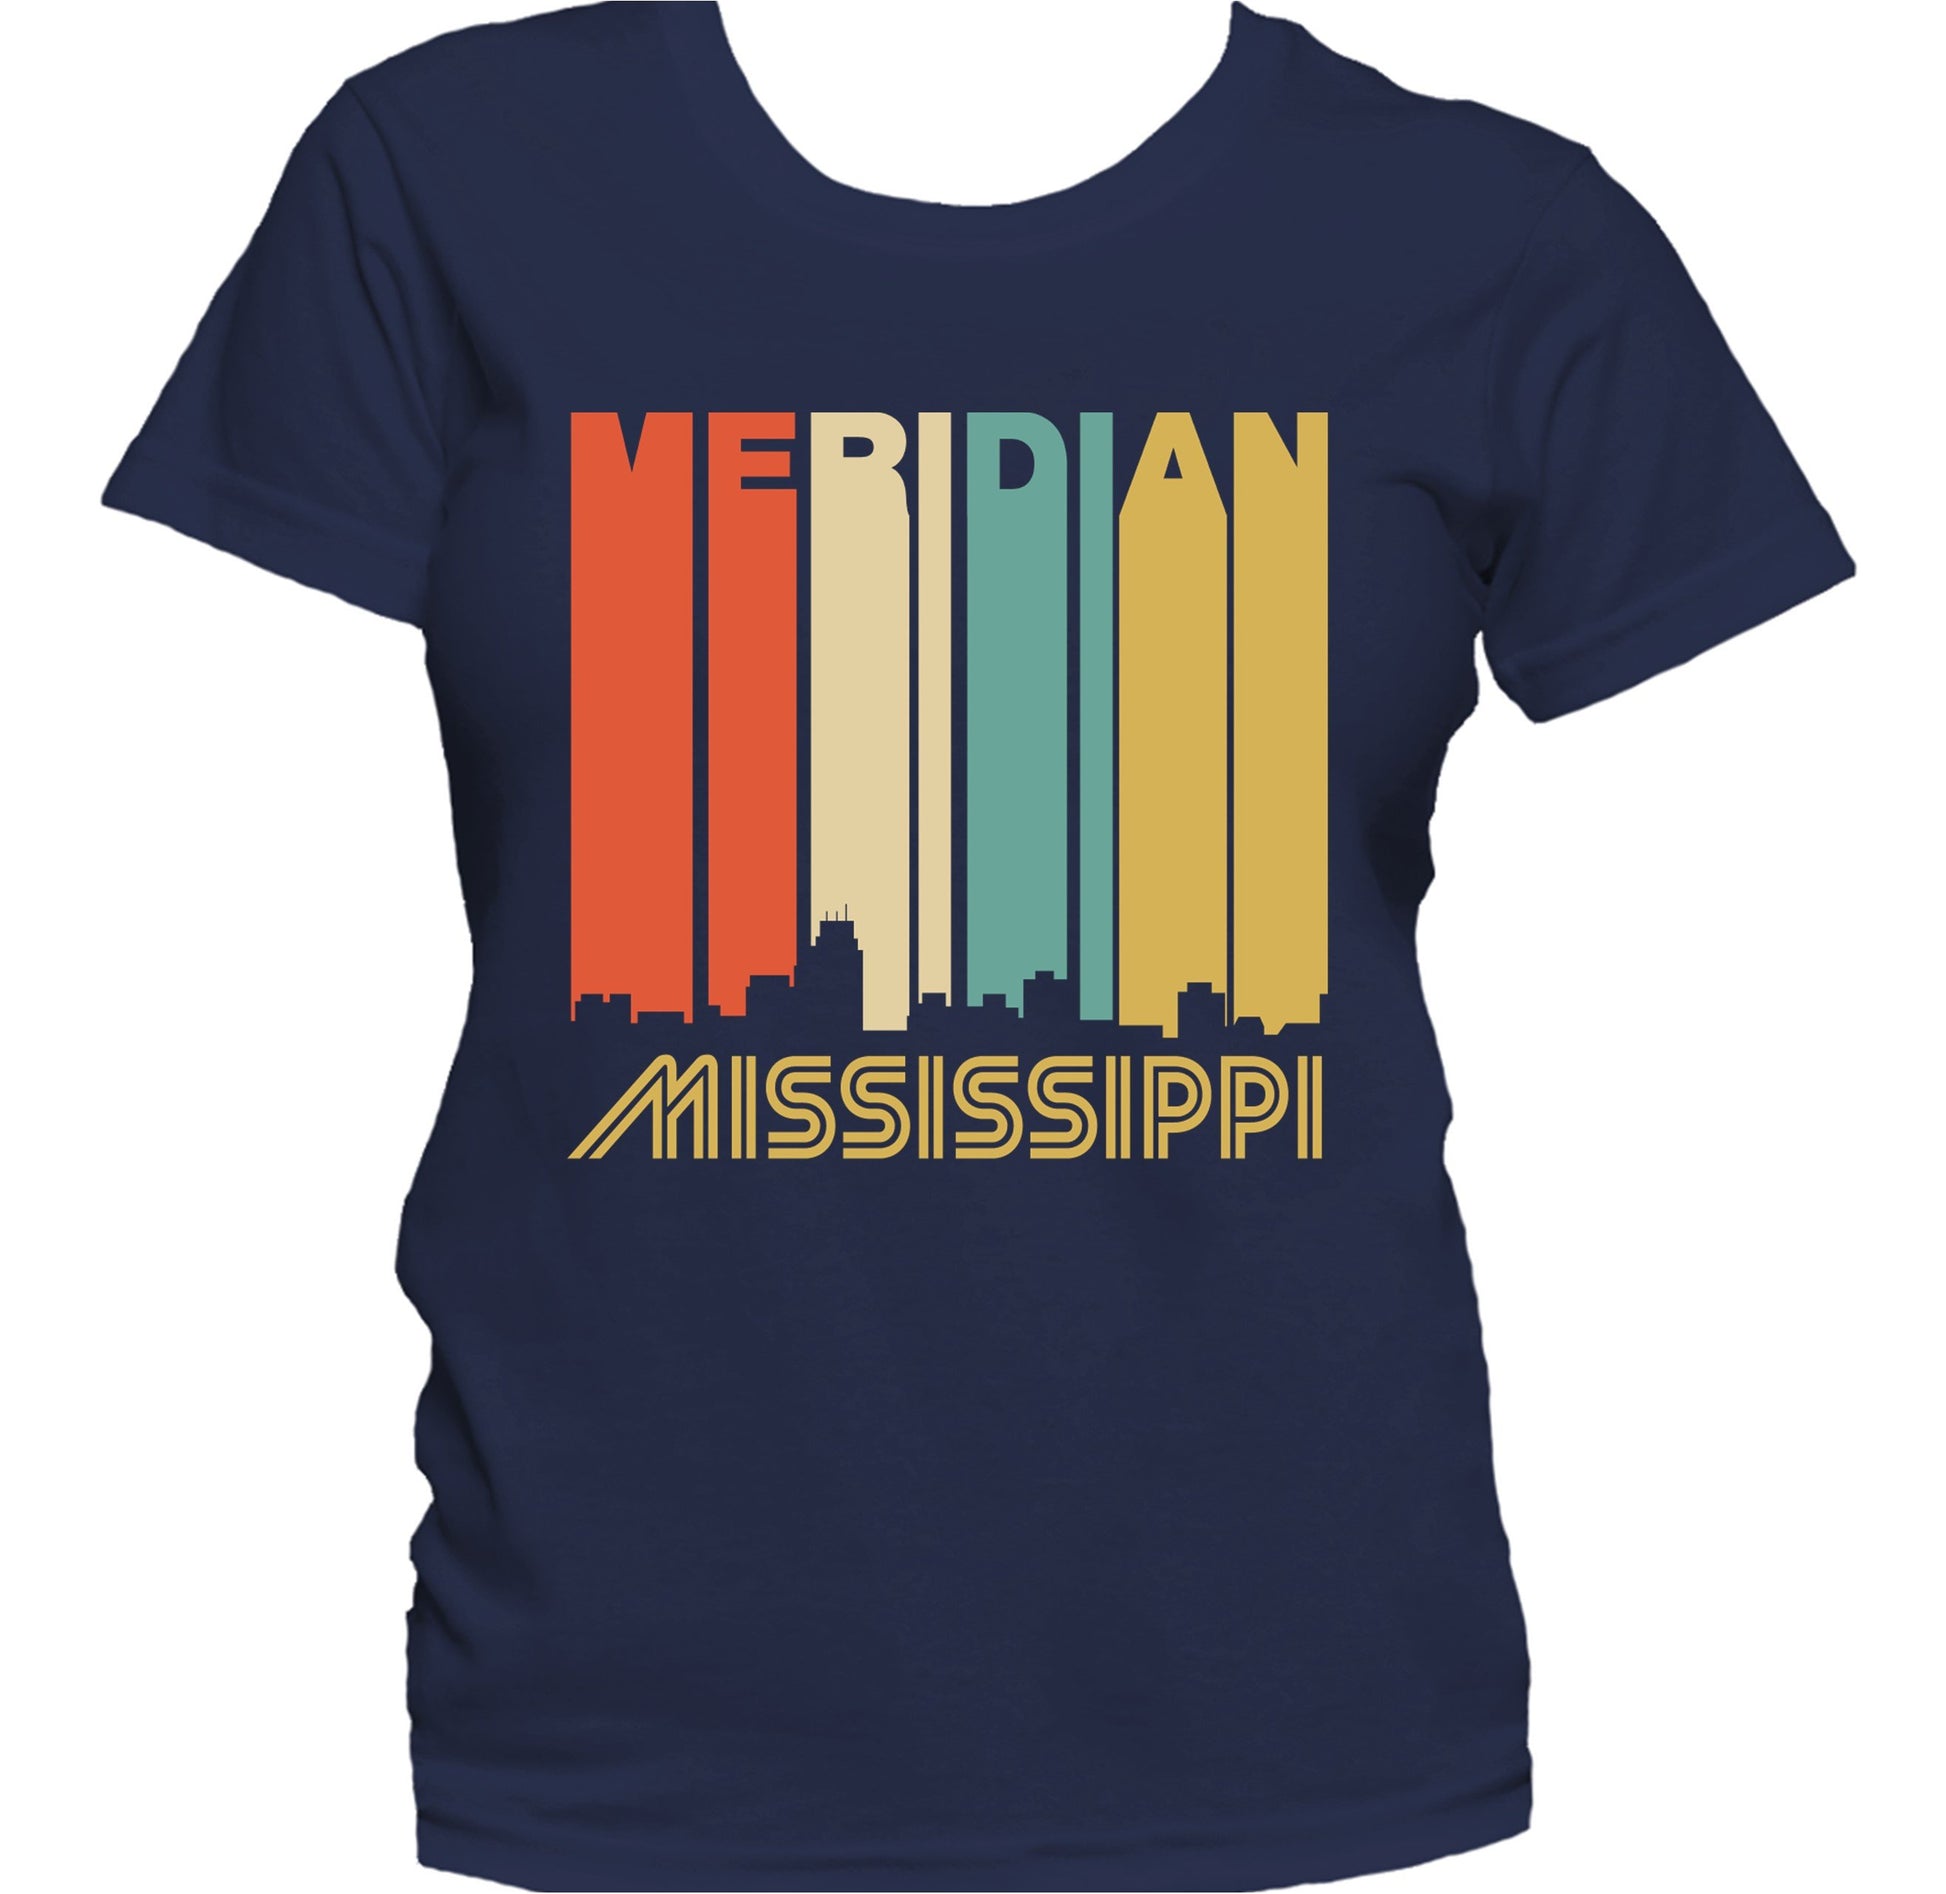 Retro 1970's Style Meridian Mississippi Skyline Women's T-Shirt